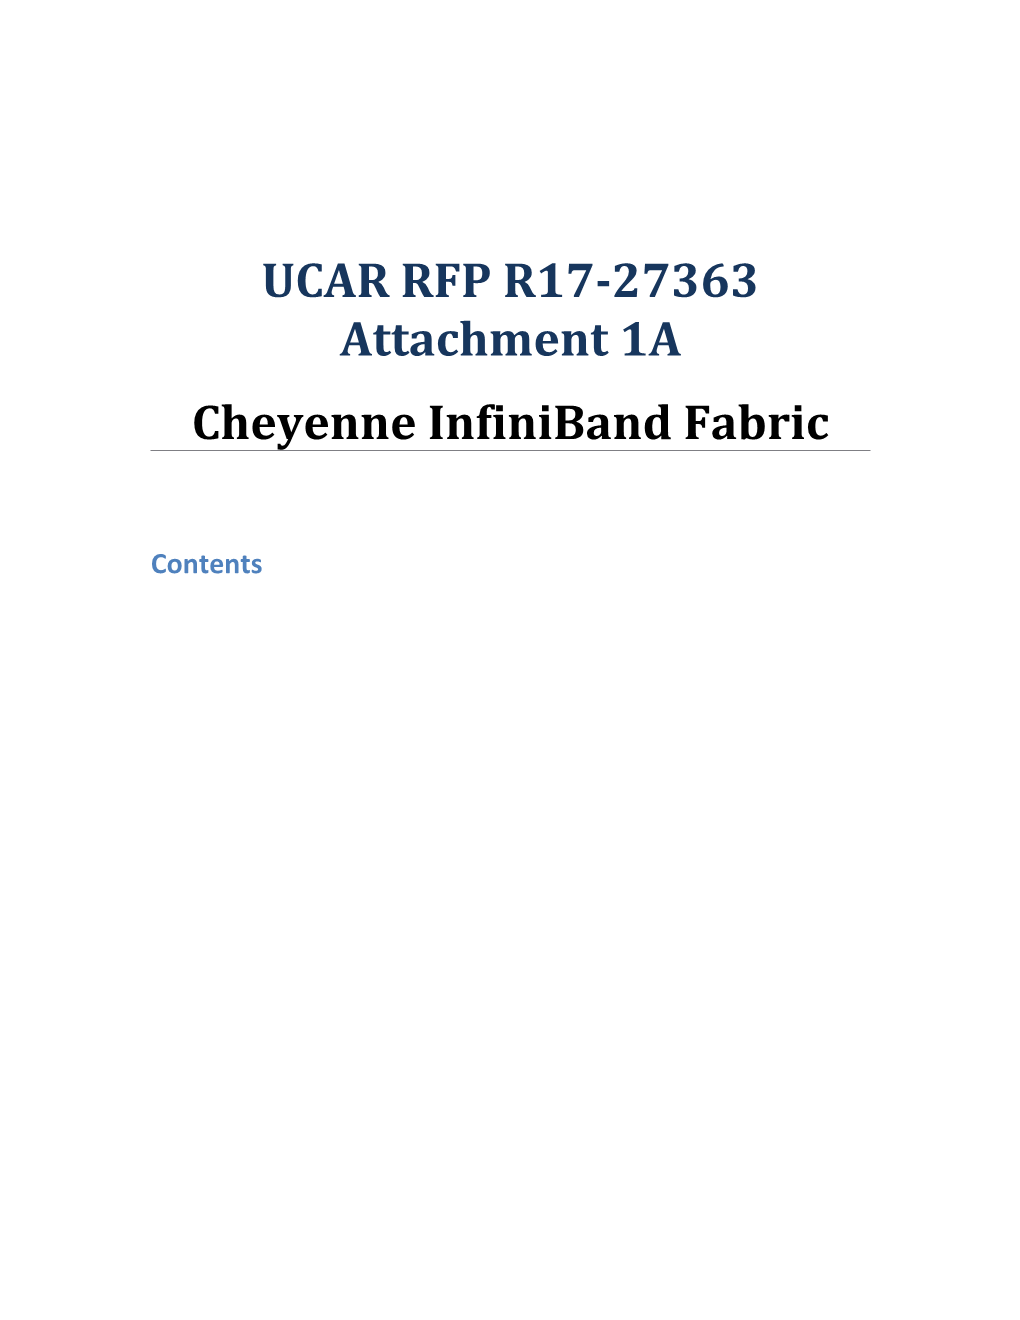 UCAR RFP R17-27363 Attachment 1A, Cheyenne Infiniband Fabric (V1)